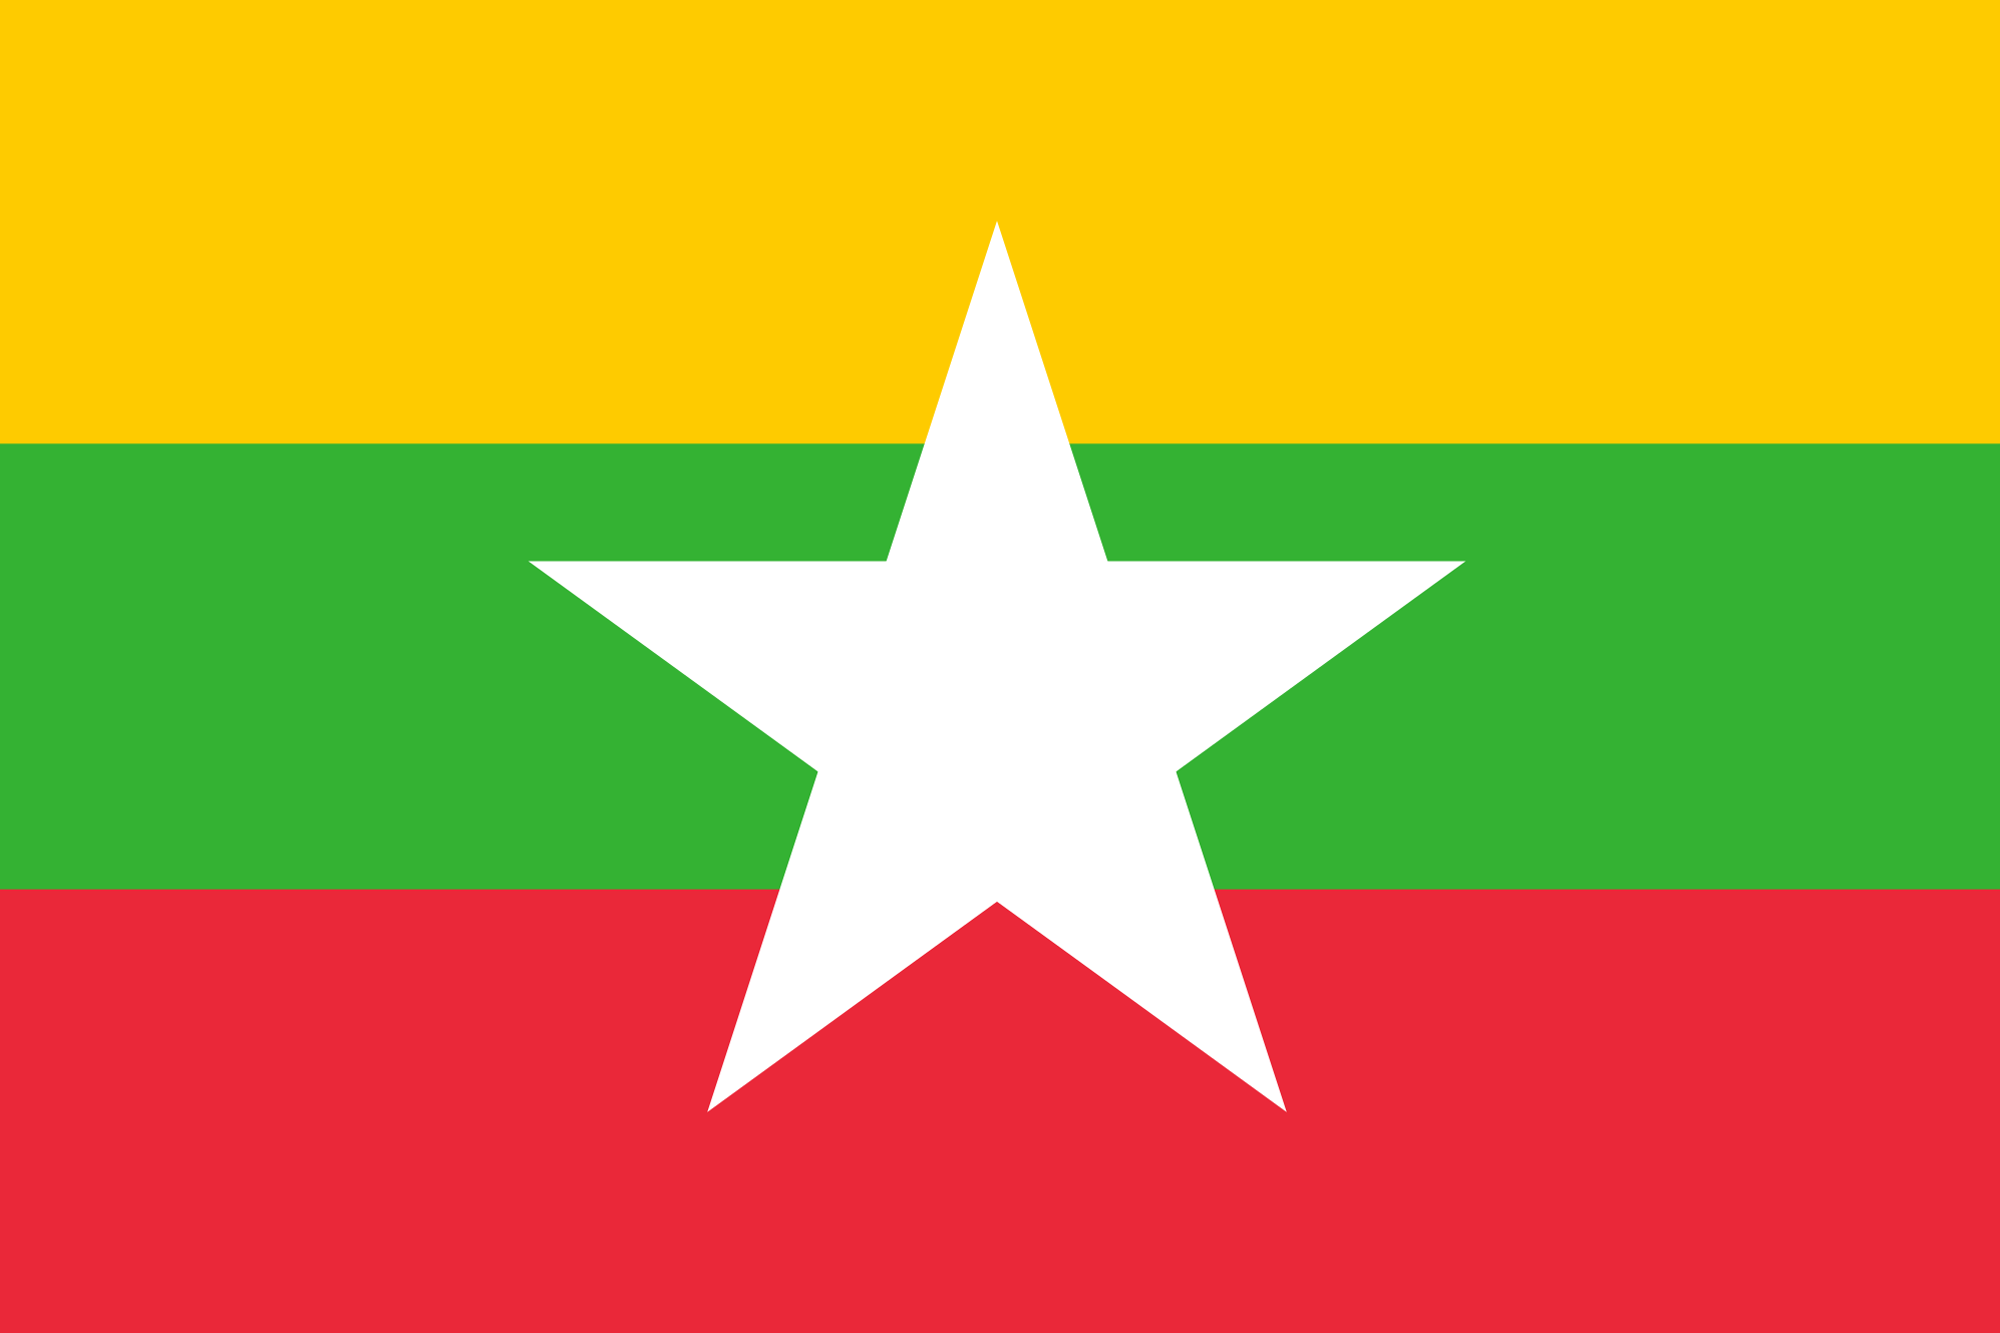 Myanmar - Myanmar Kyat (MMK)